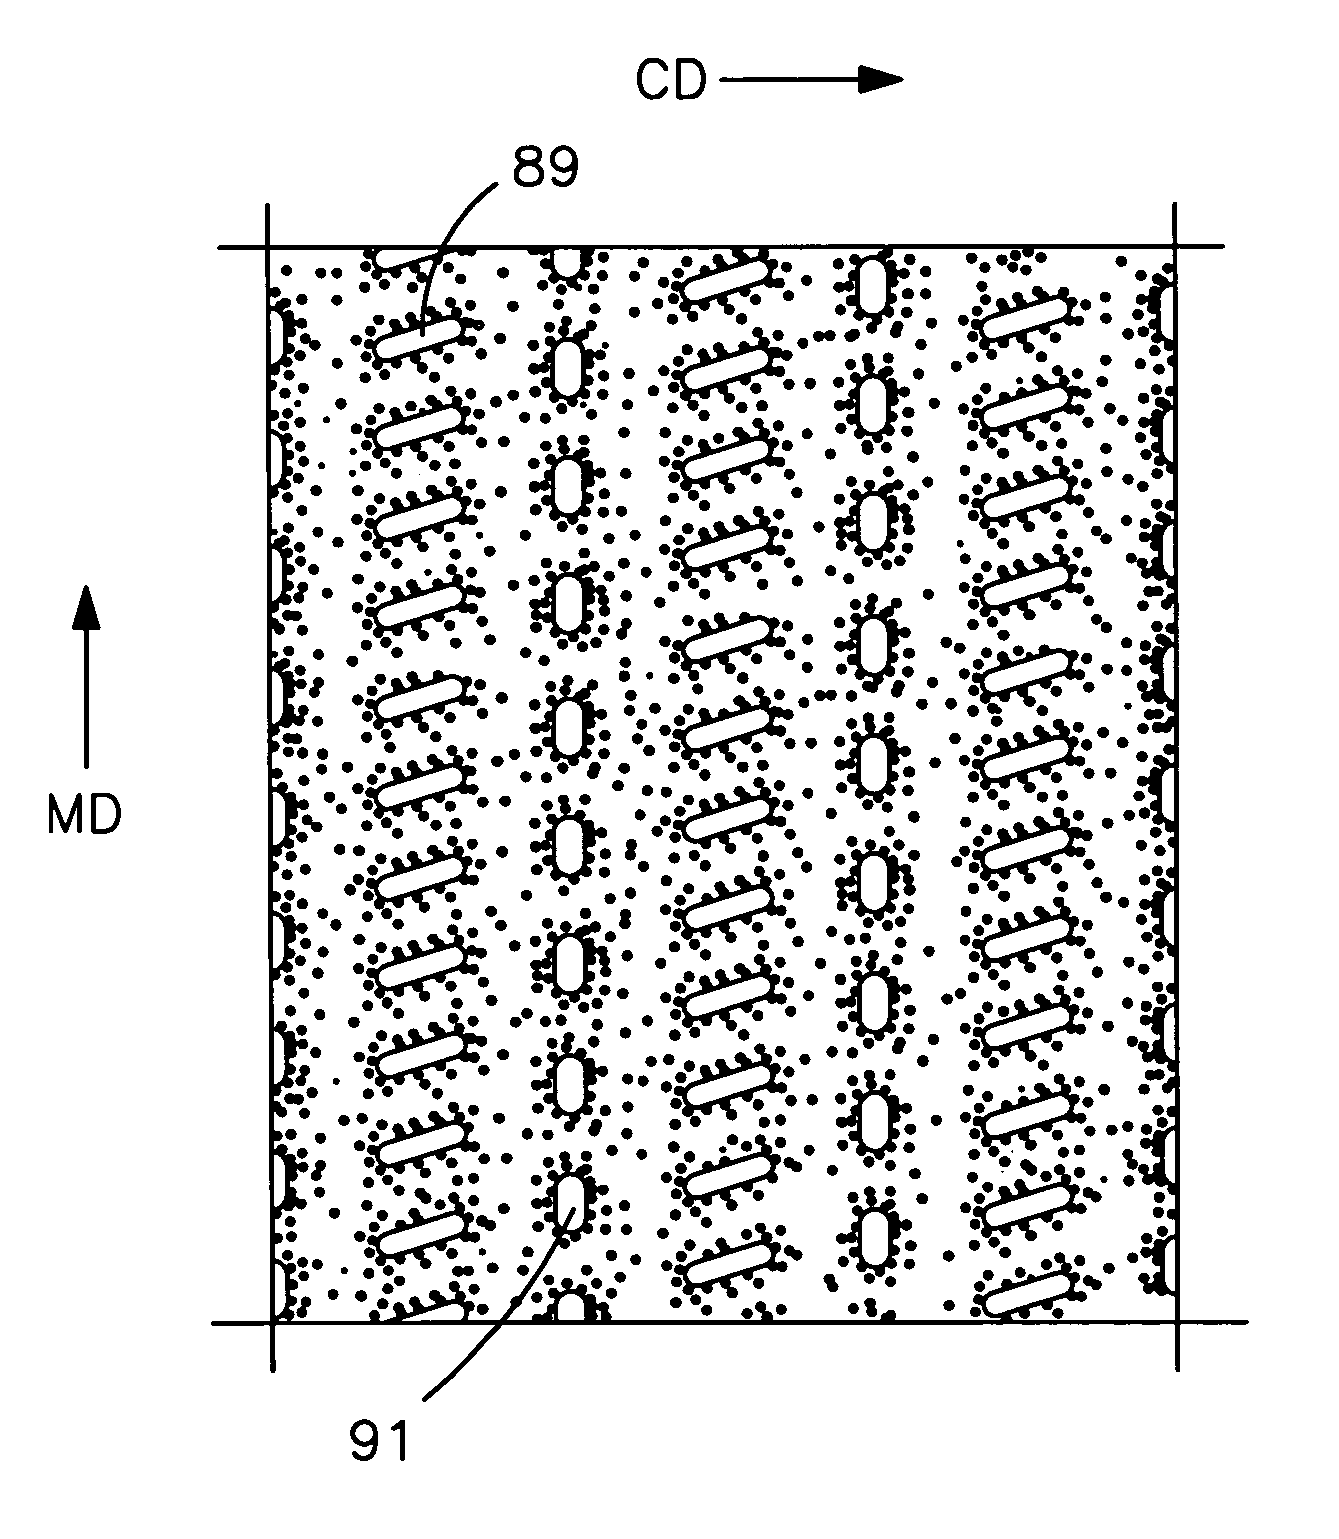 Nonwoven composite containing an apertured elastic film